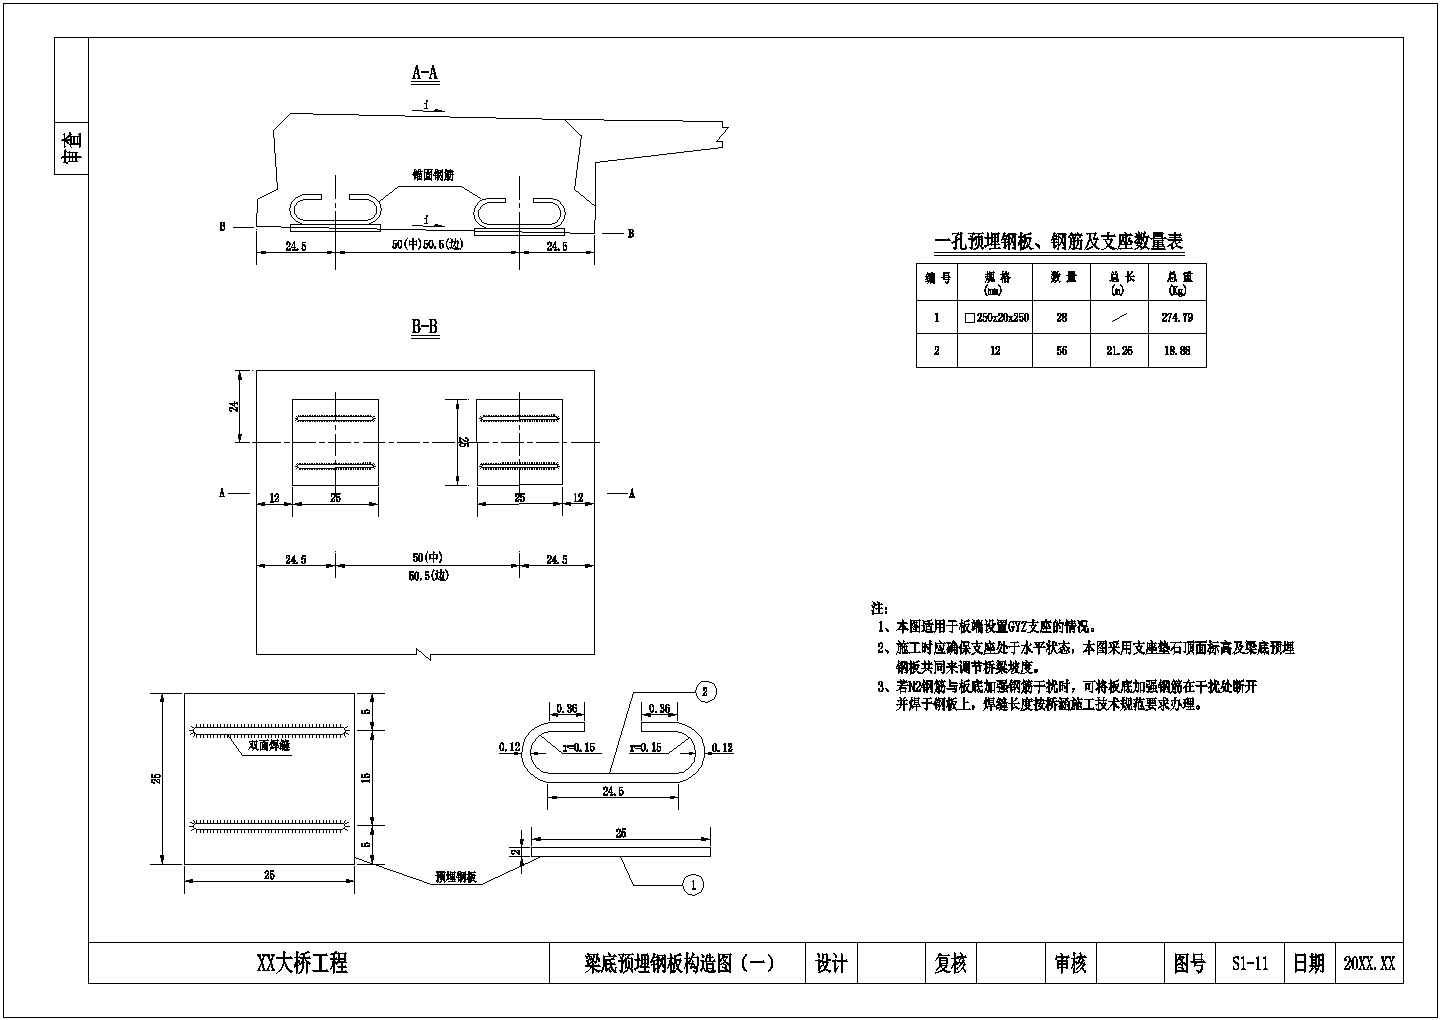 【陕西】3×16米钢筋混凝土空心板桥施工图